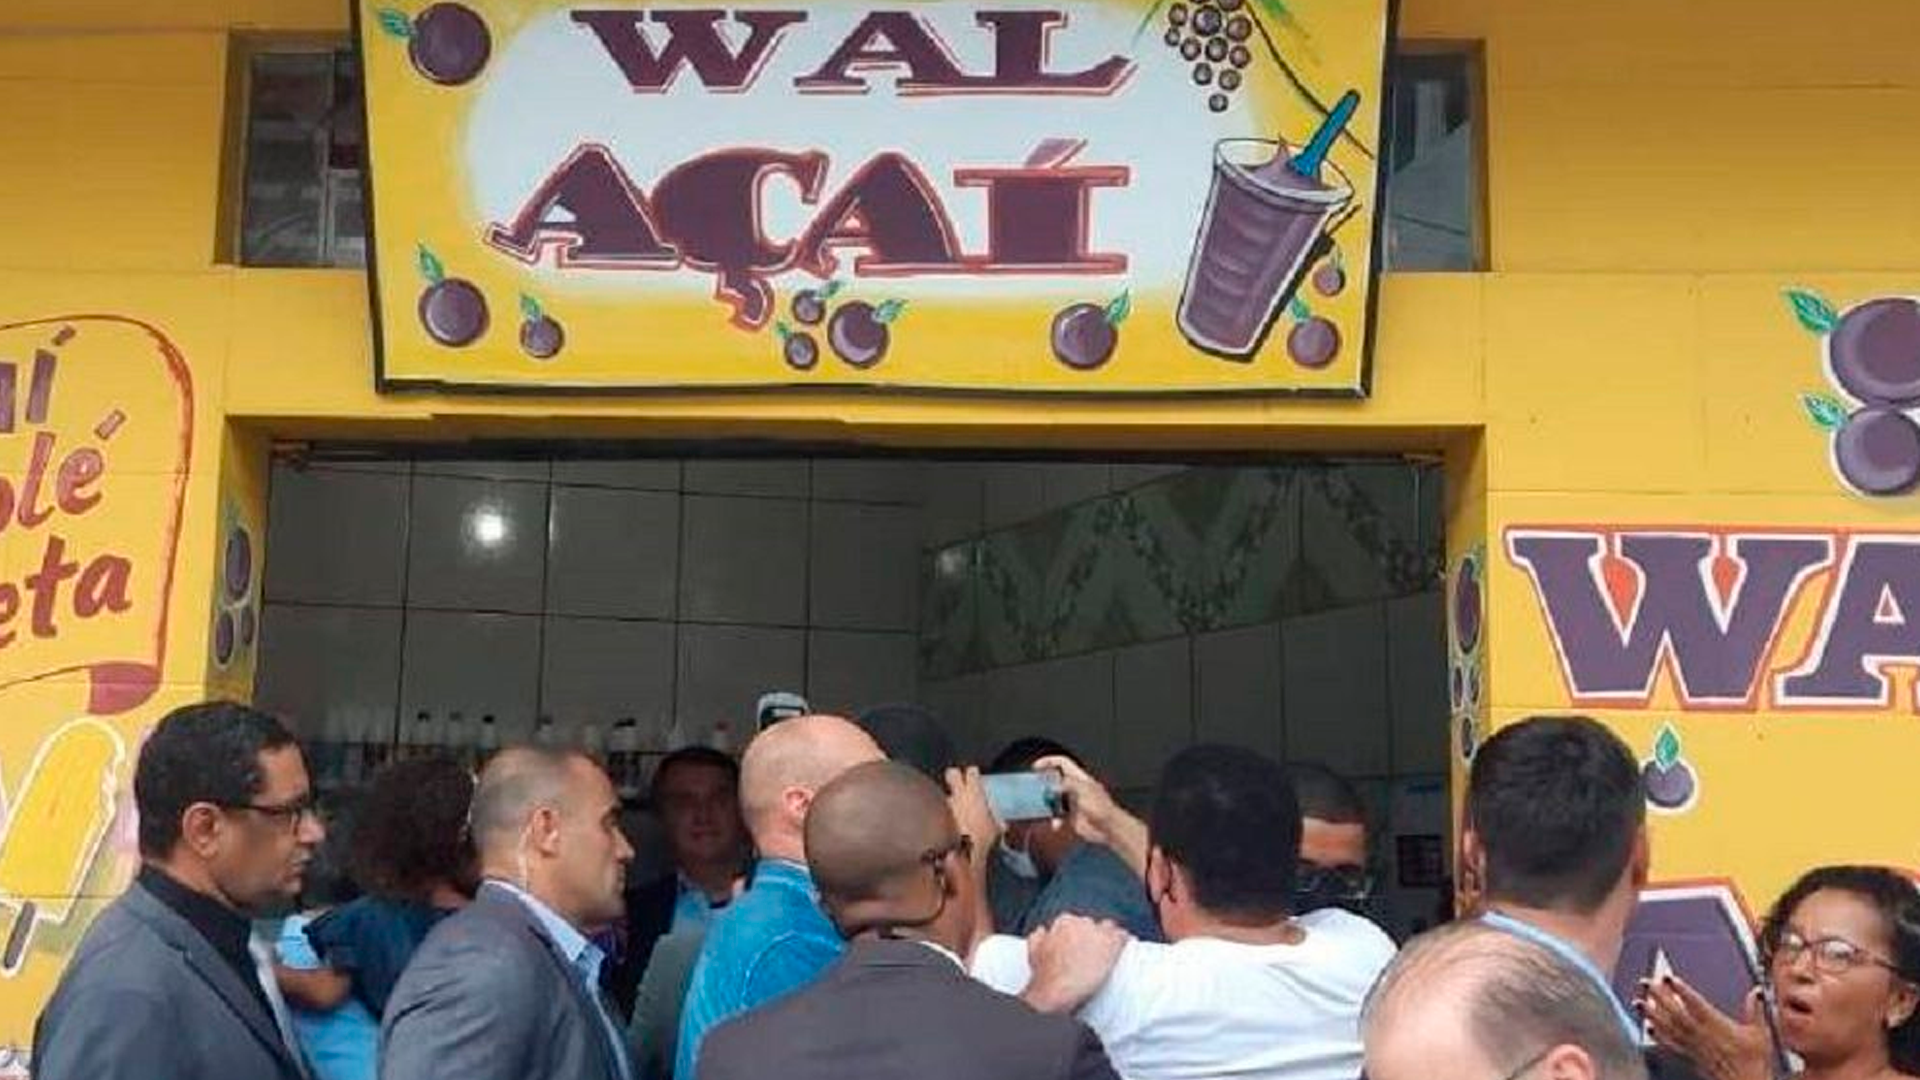 Bolsonaro em visita a loja de Wal do Açaí